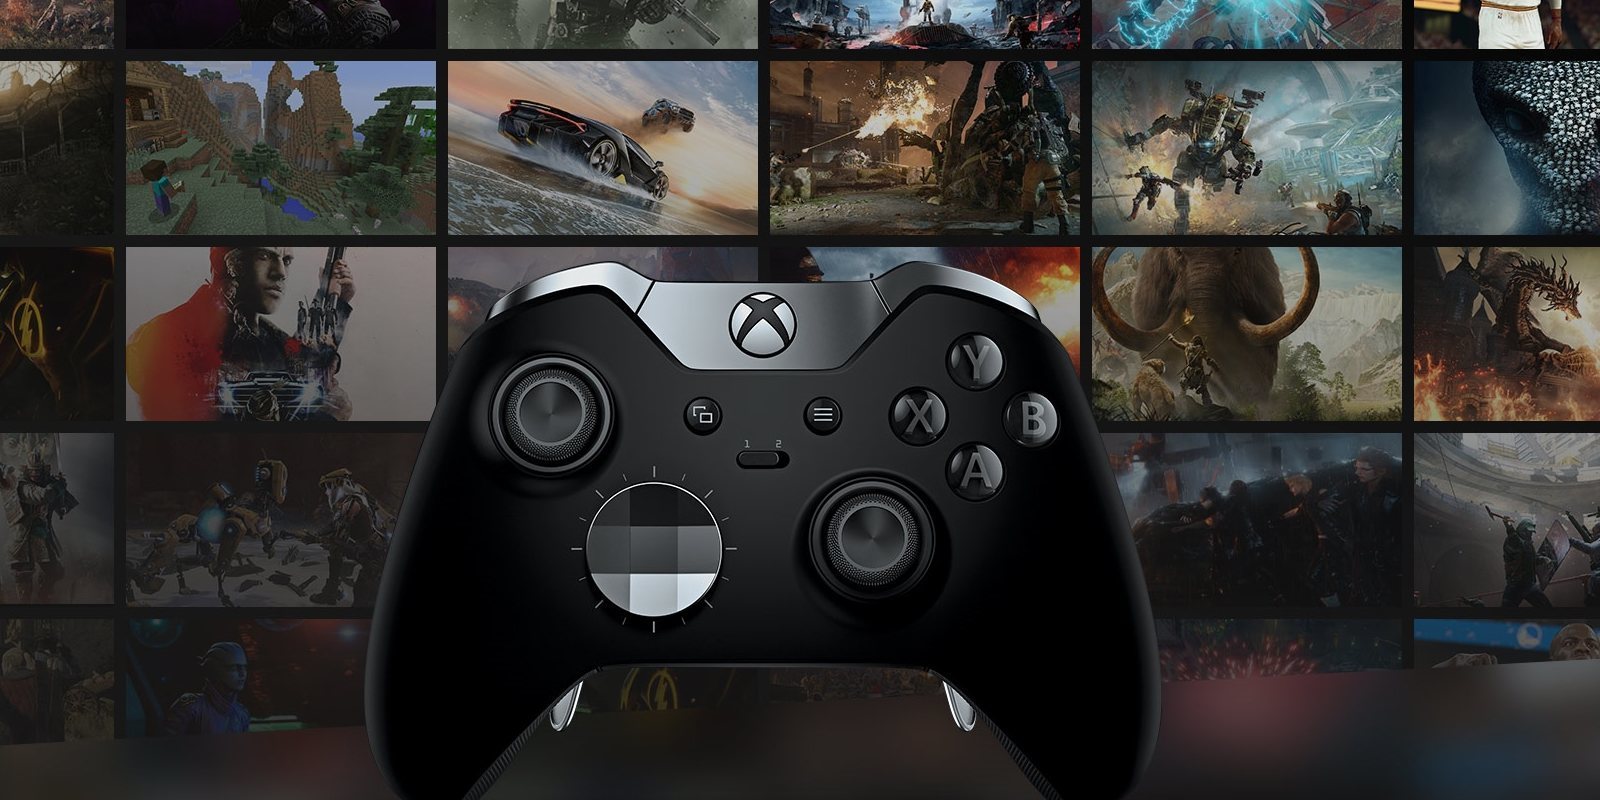 Llegan los reyes: ¿Qué regalar si apostamos por Xbox One?